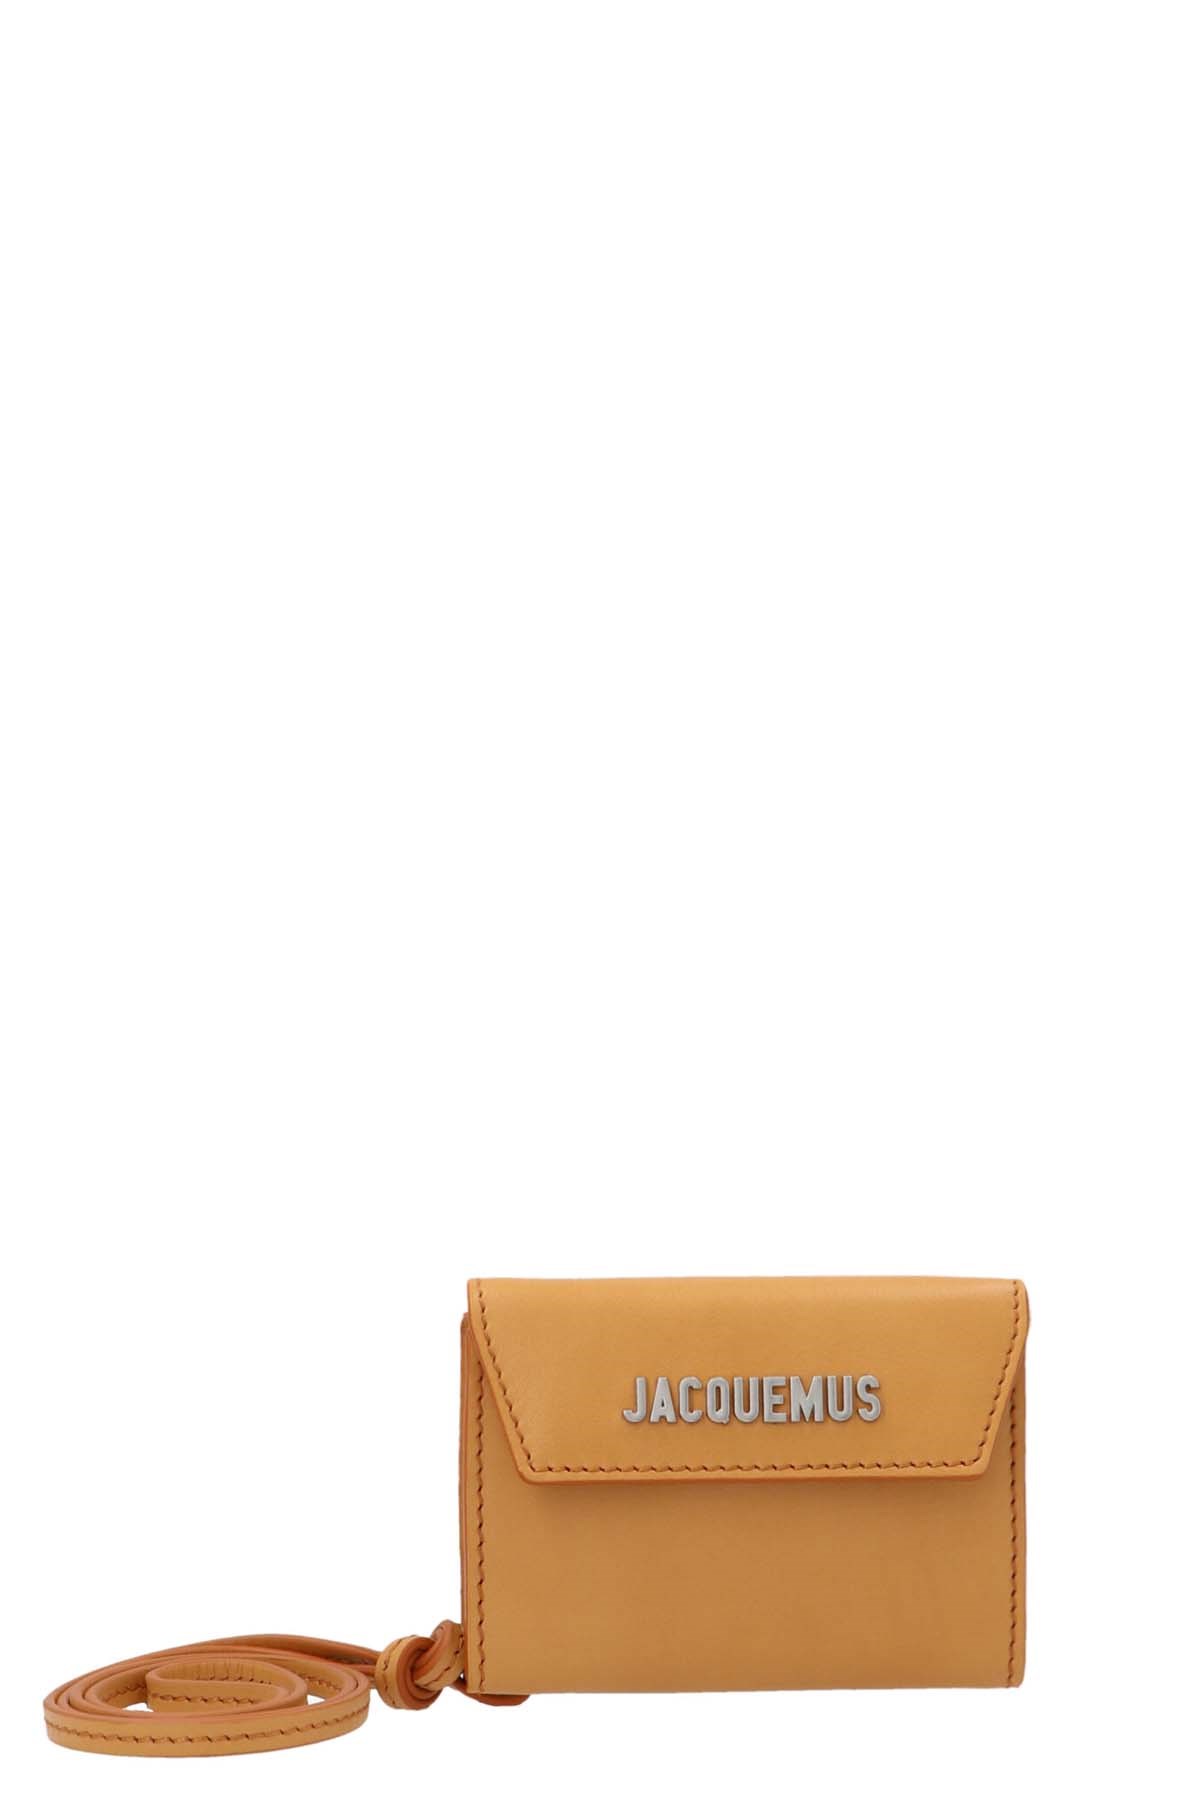 JACQUEMUS 'Le Porte Jacquemus' Wallet